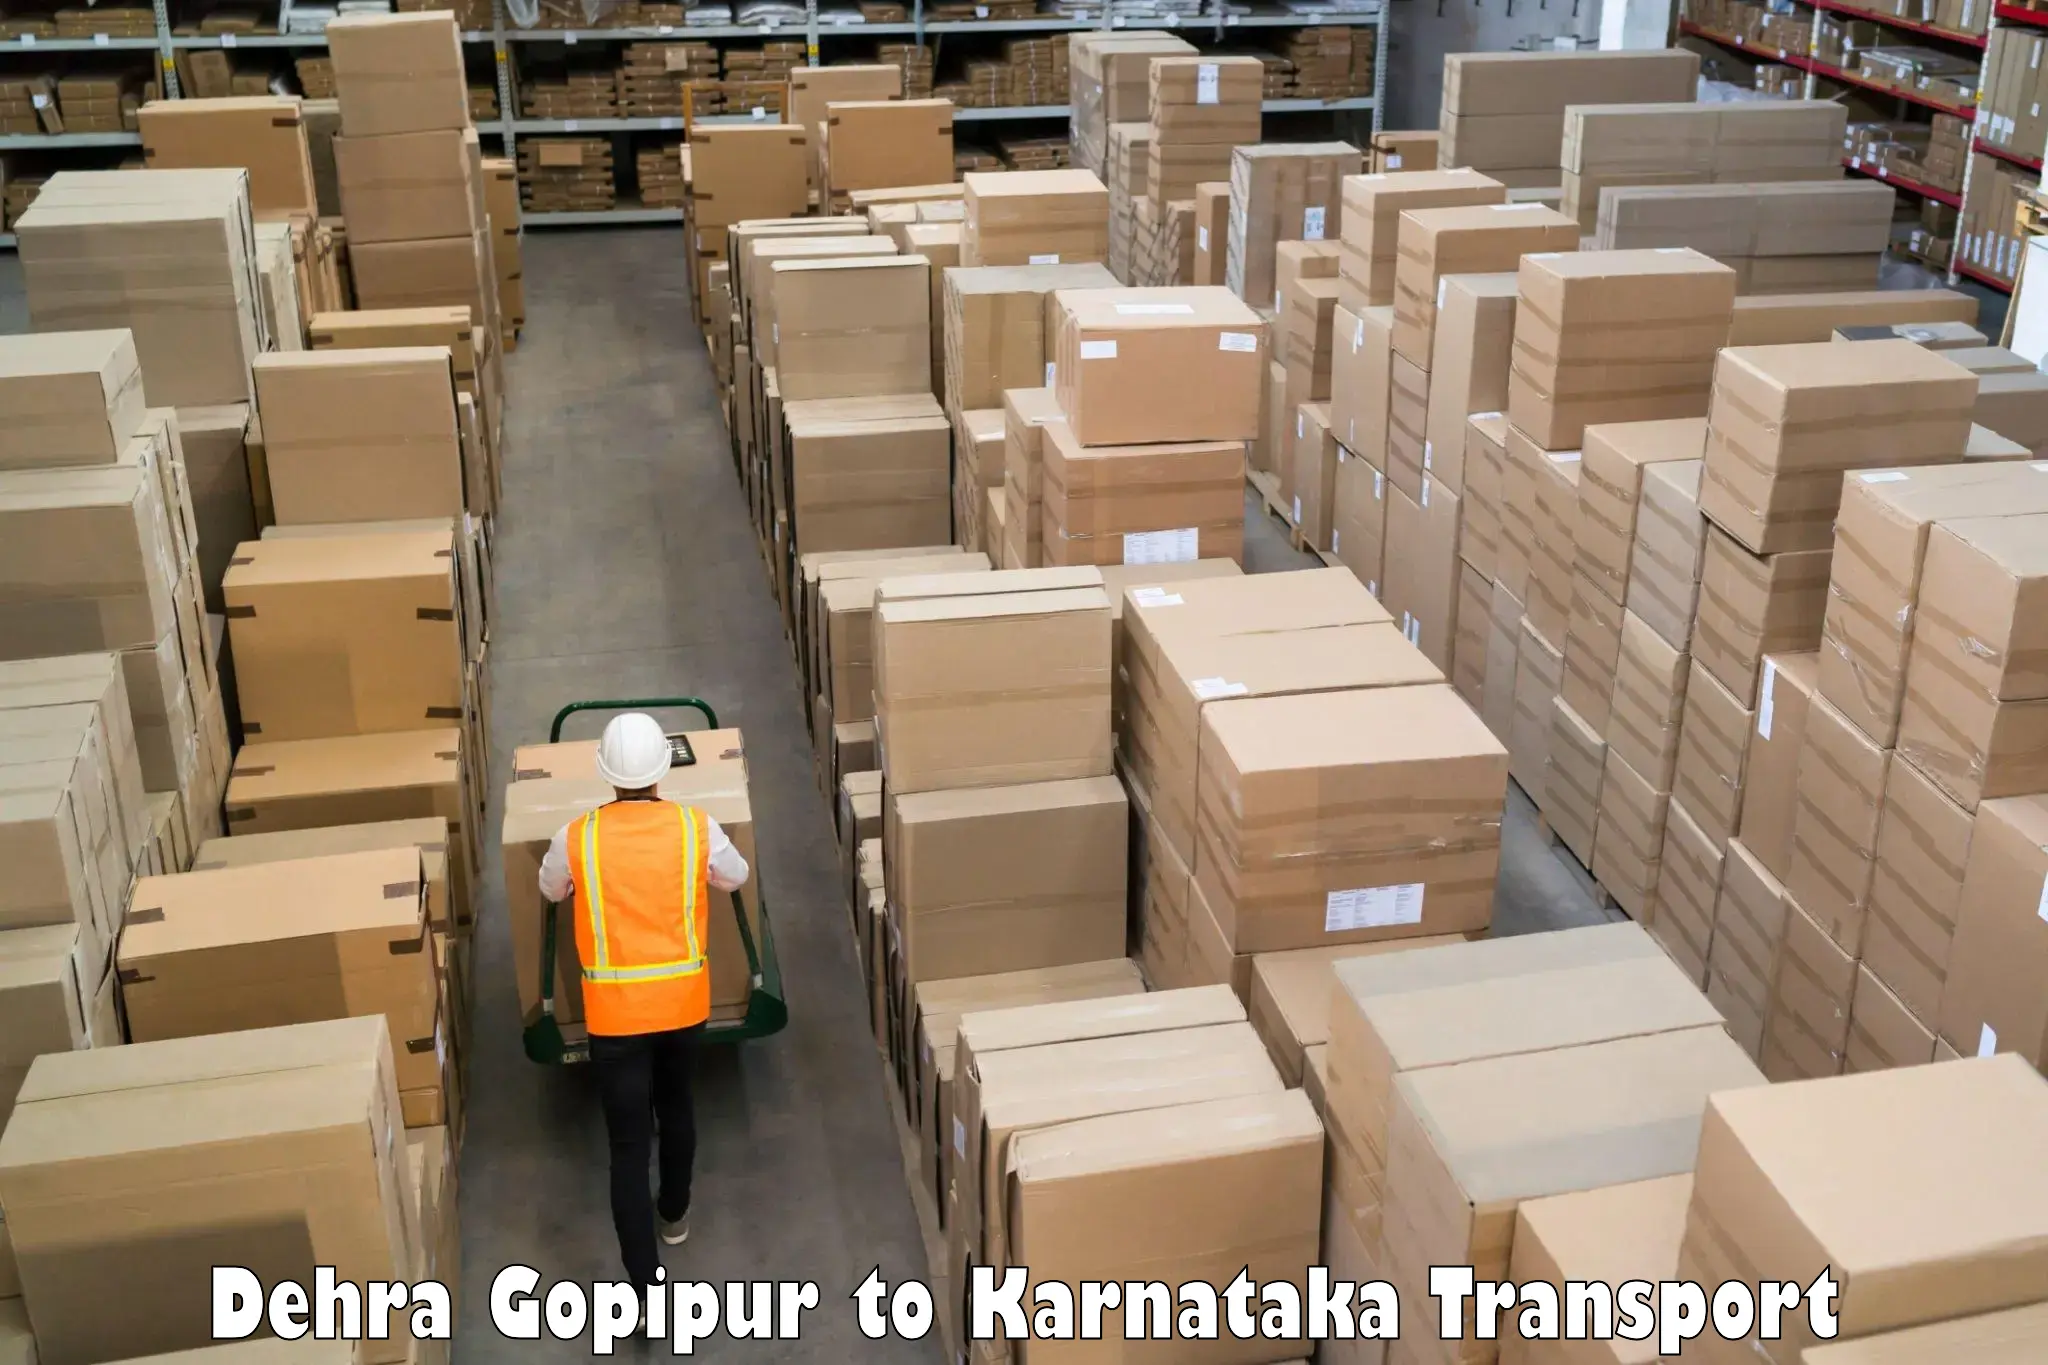 International cargo transportation services Dehra Gopipur to Puttur